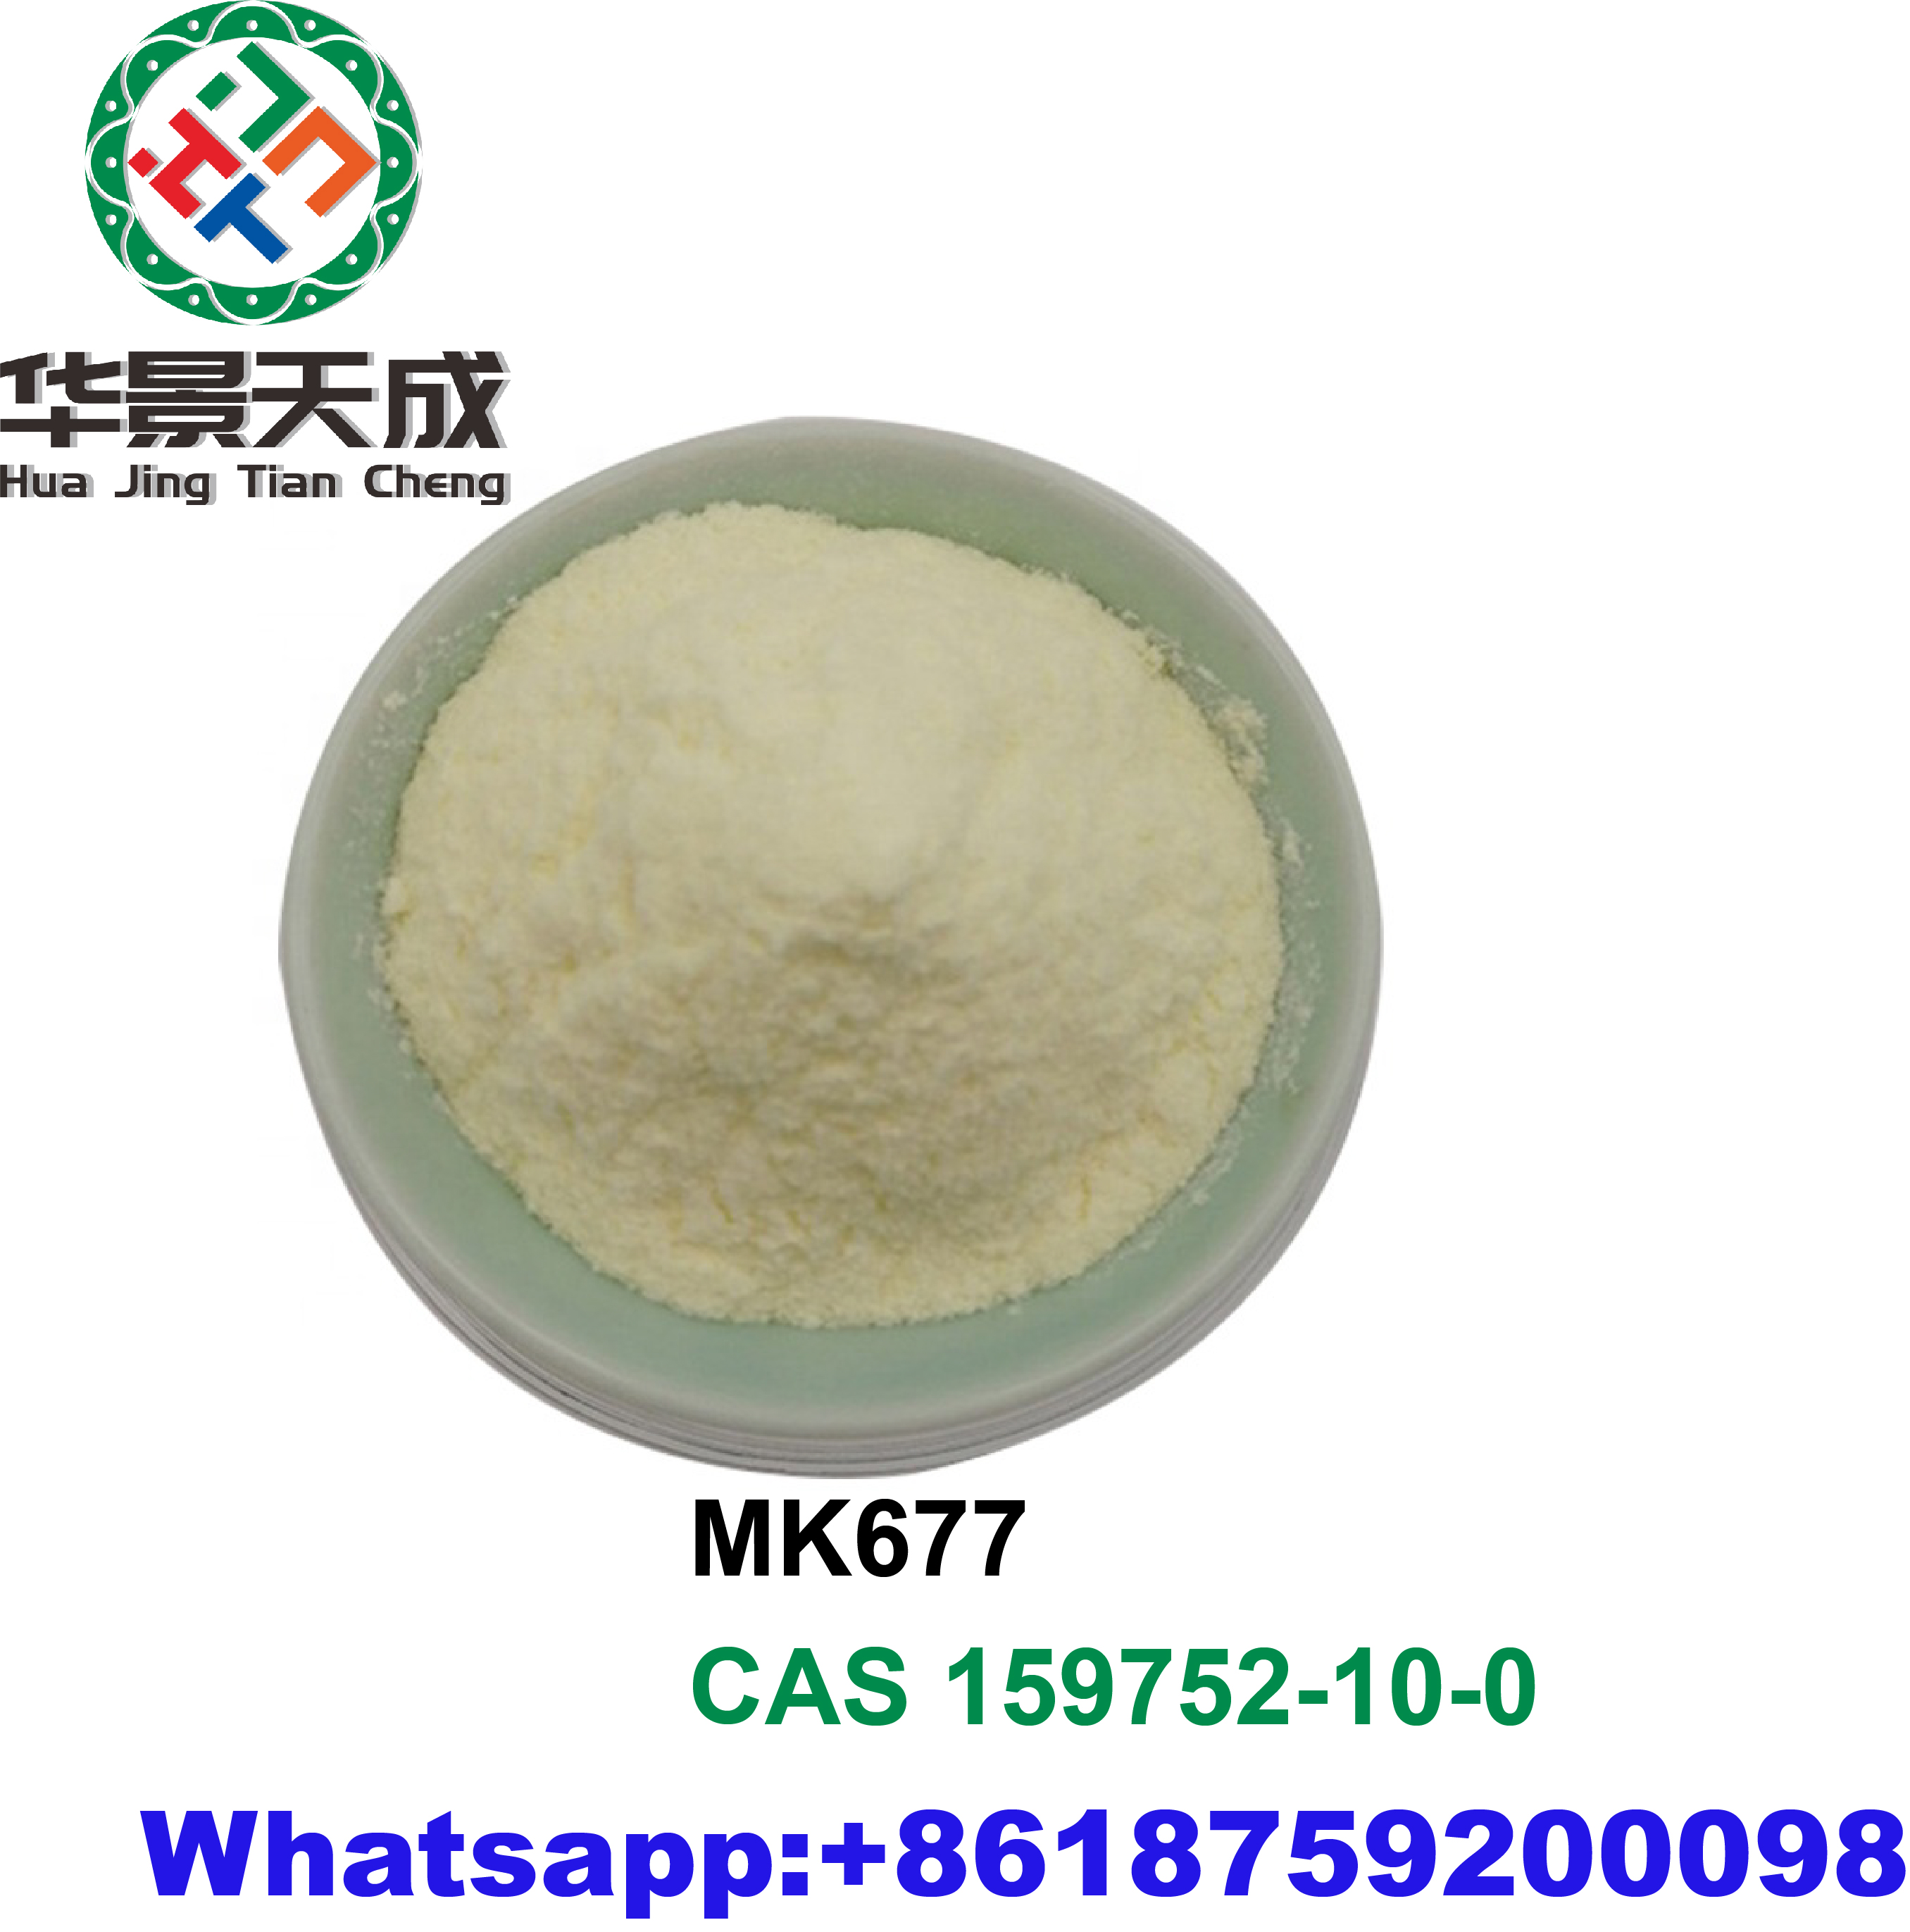 Bodybuilding Supplements MK677（Ibutamoren）Sarms Raw Prohormones Steroids White Powder Featured Image